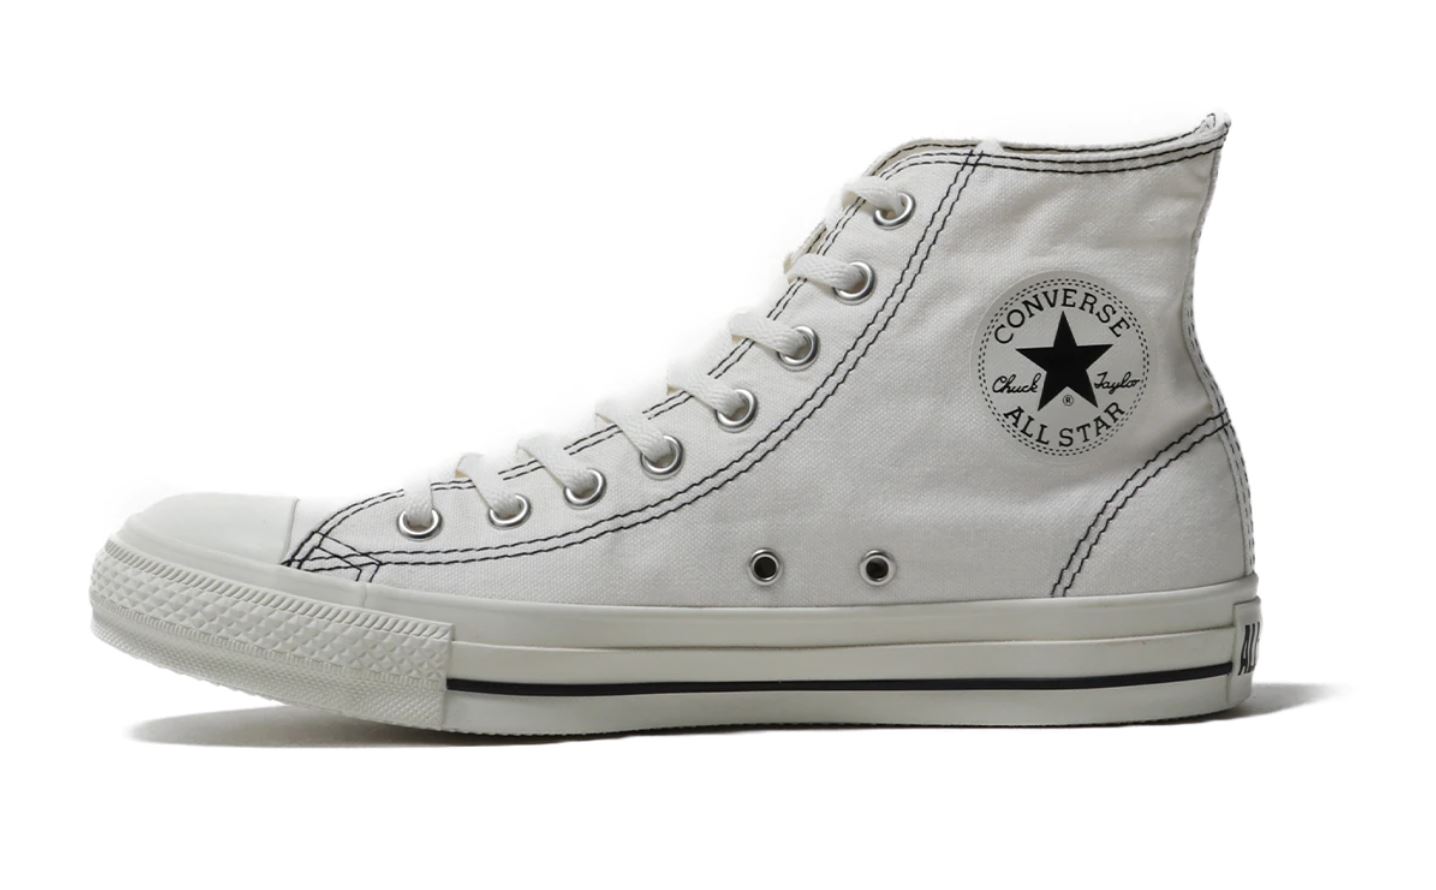 Converse All Star Stitching Hi White 19HO-I (コンバース オール スター スティッチング ハイ ホワイト 19HO-I)